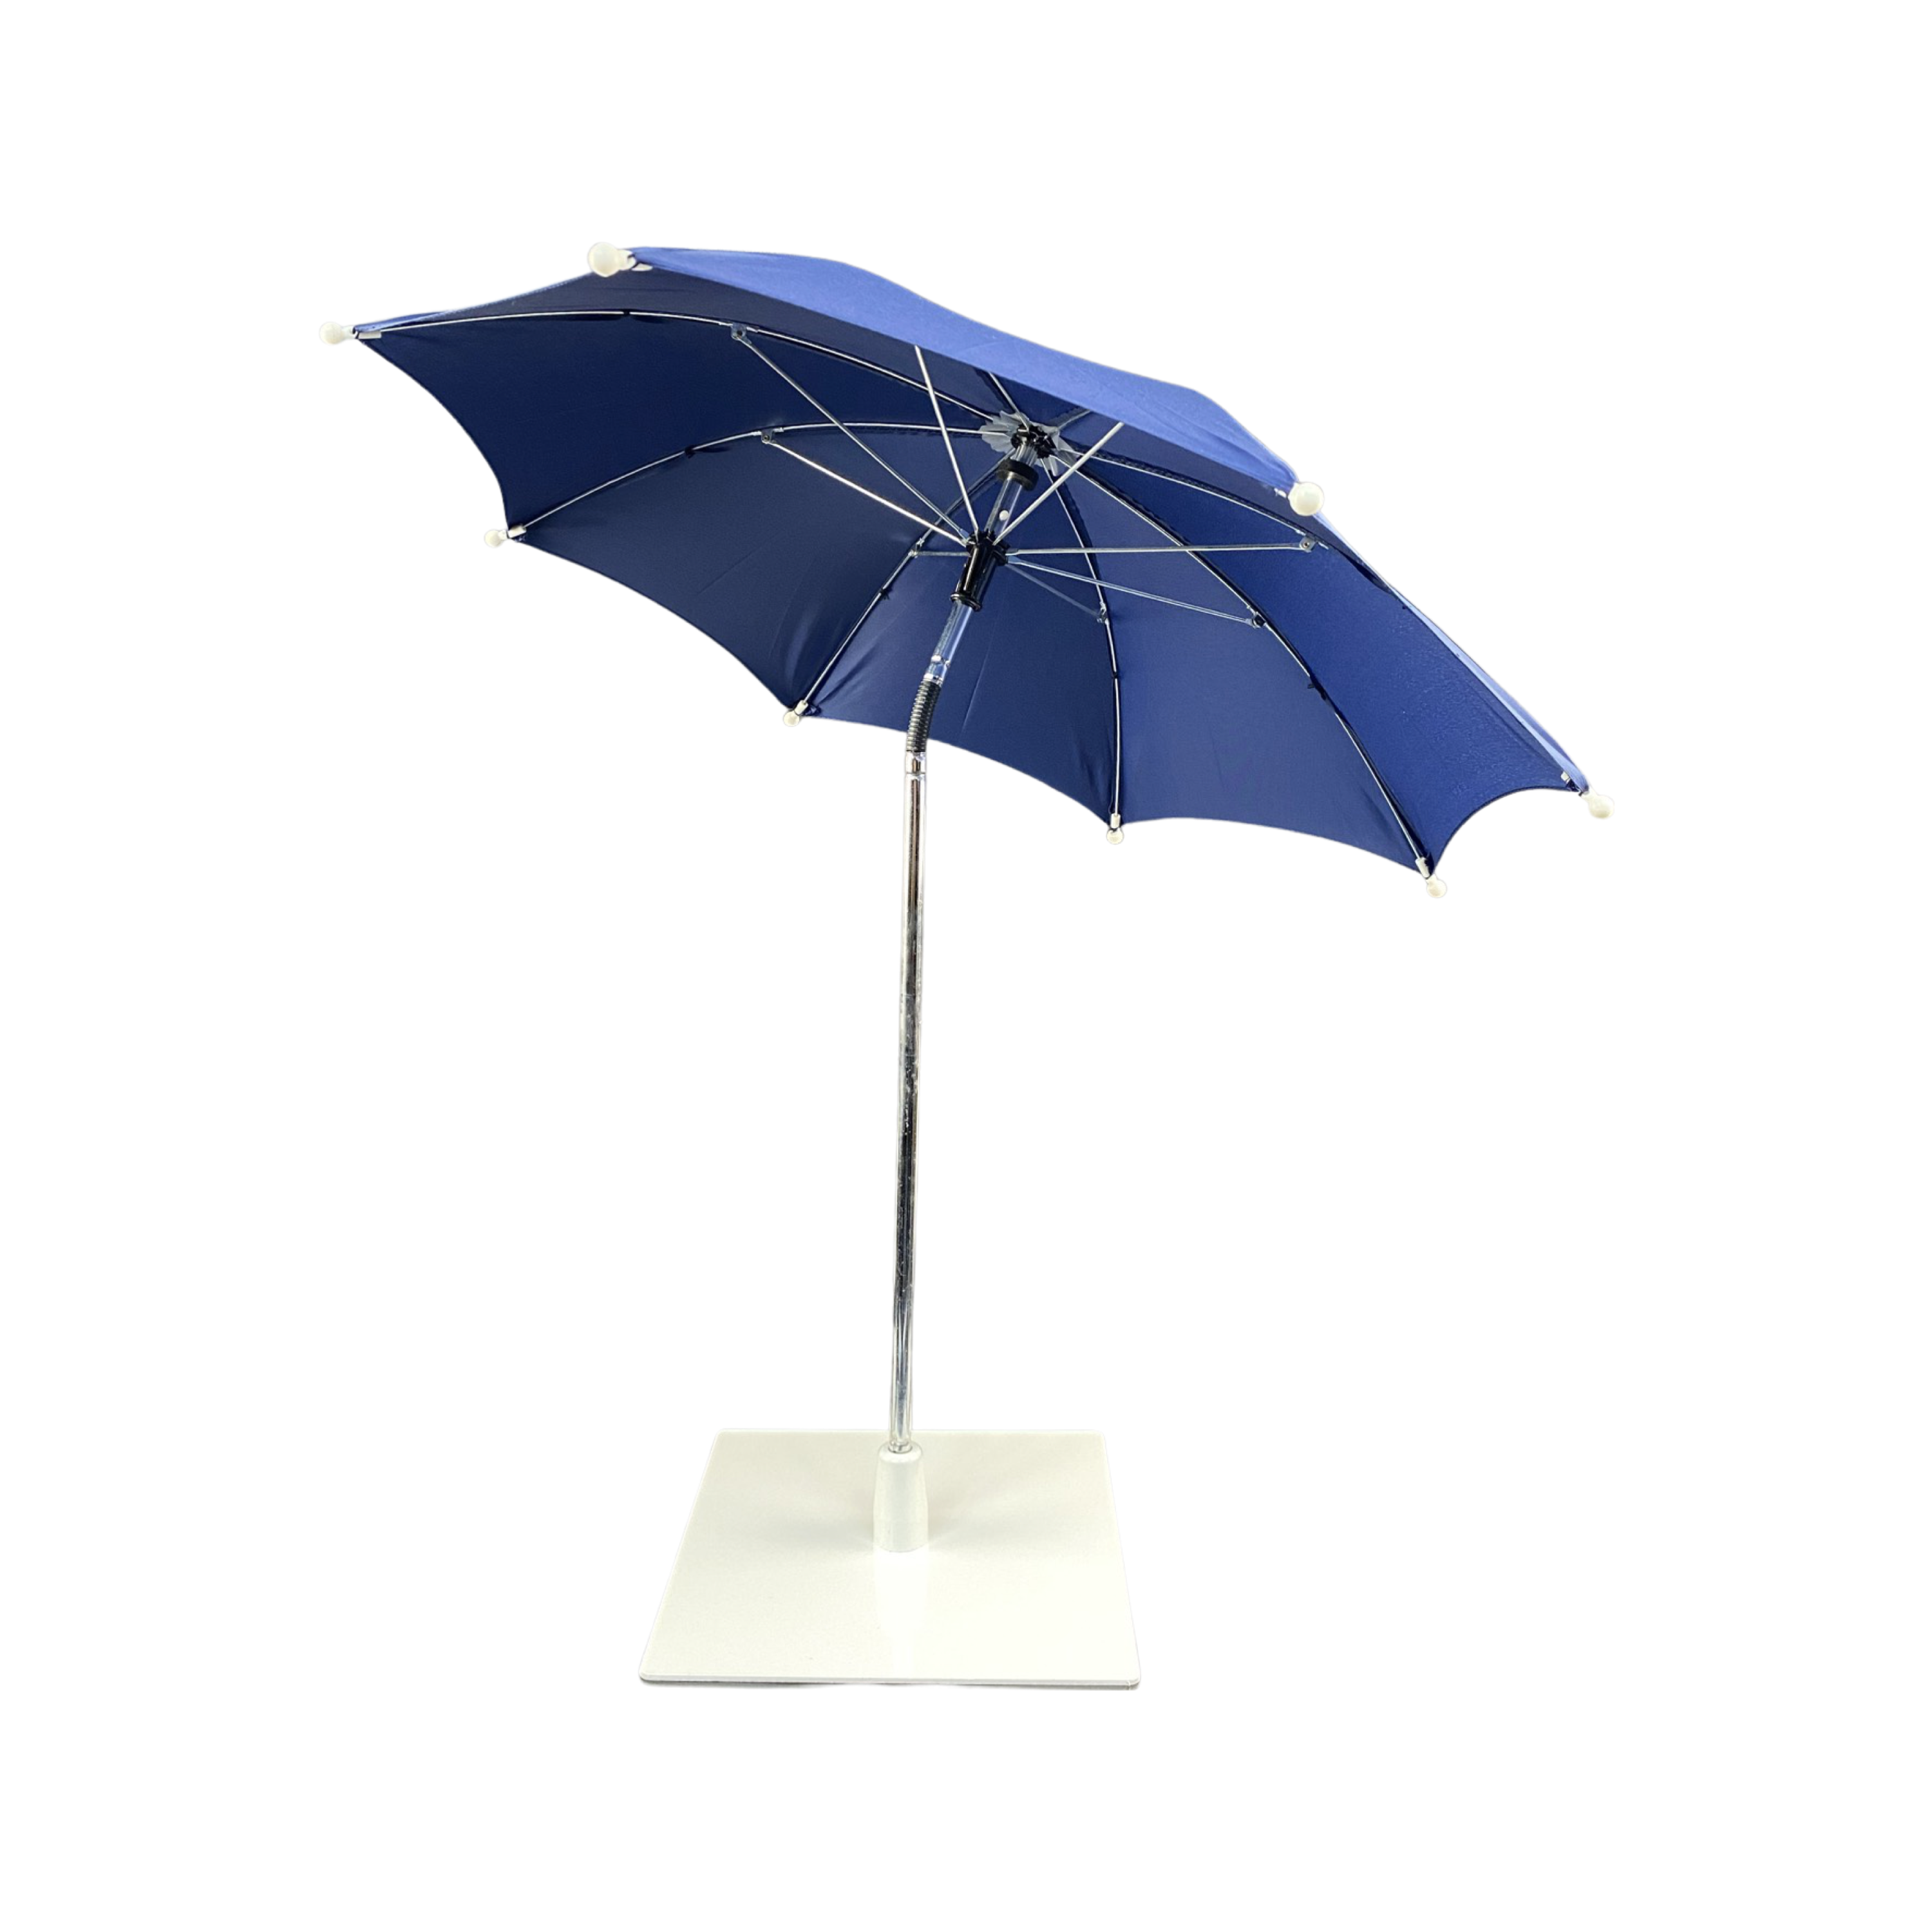 Laan een miljoen aankomen Tafel parasol – Blauw – De Tafelparasol